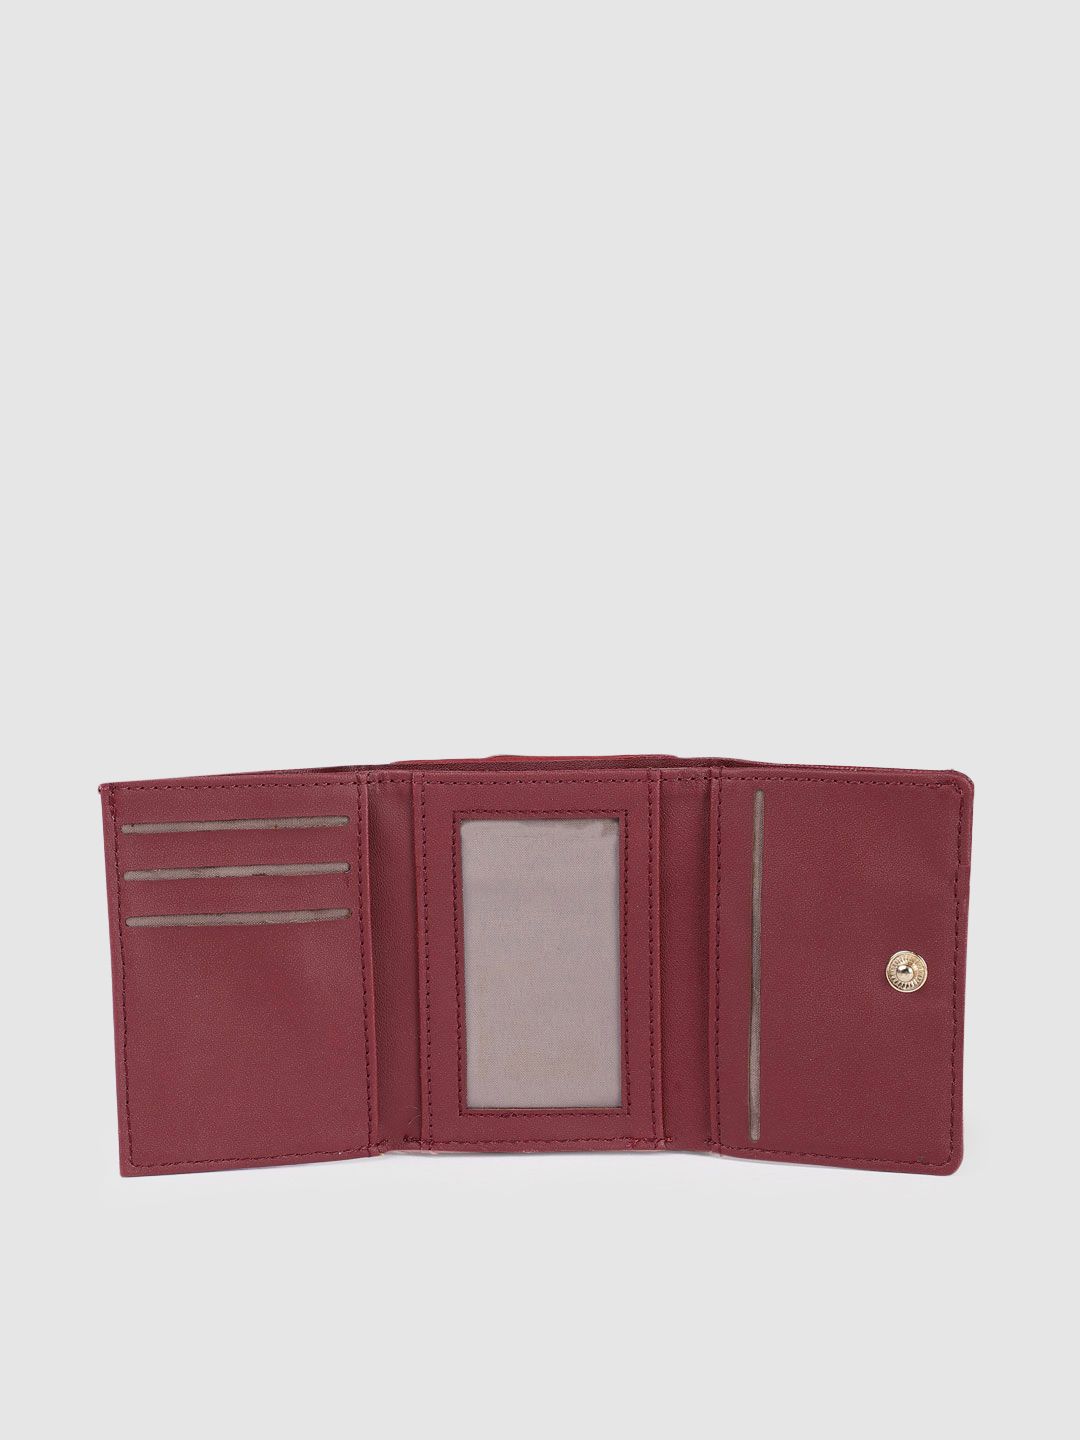 Baggit Women's 3 Fold Wallet - Large (Purple)